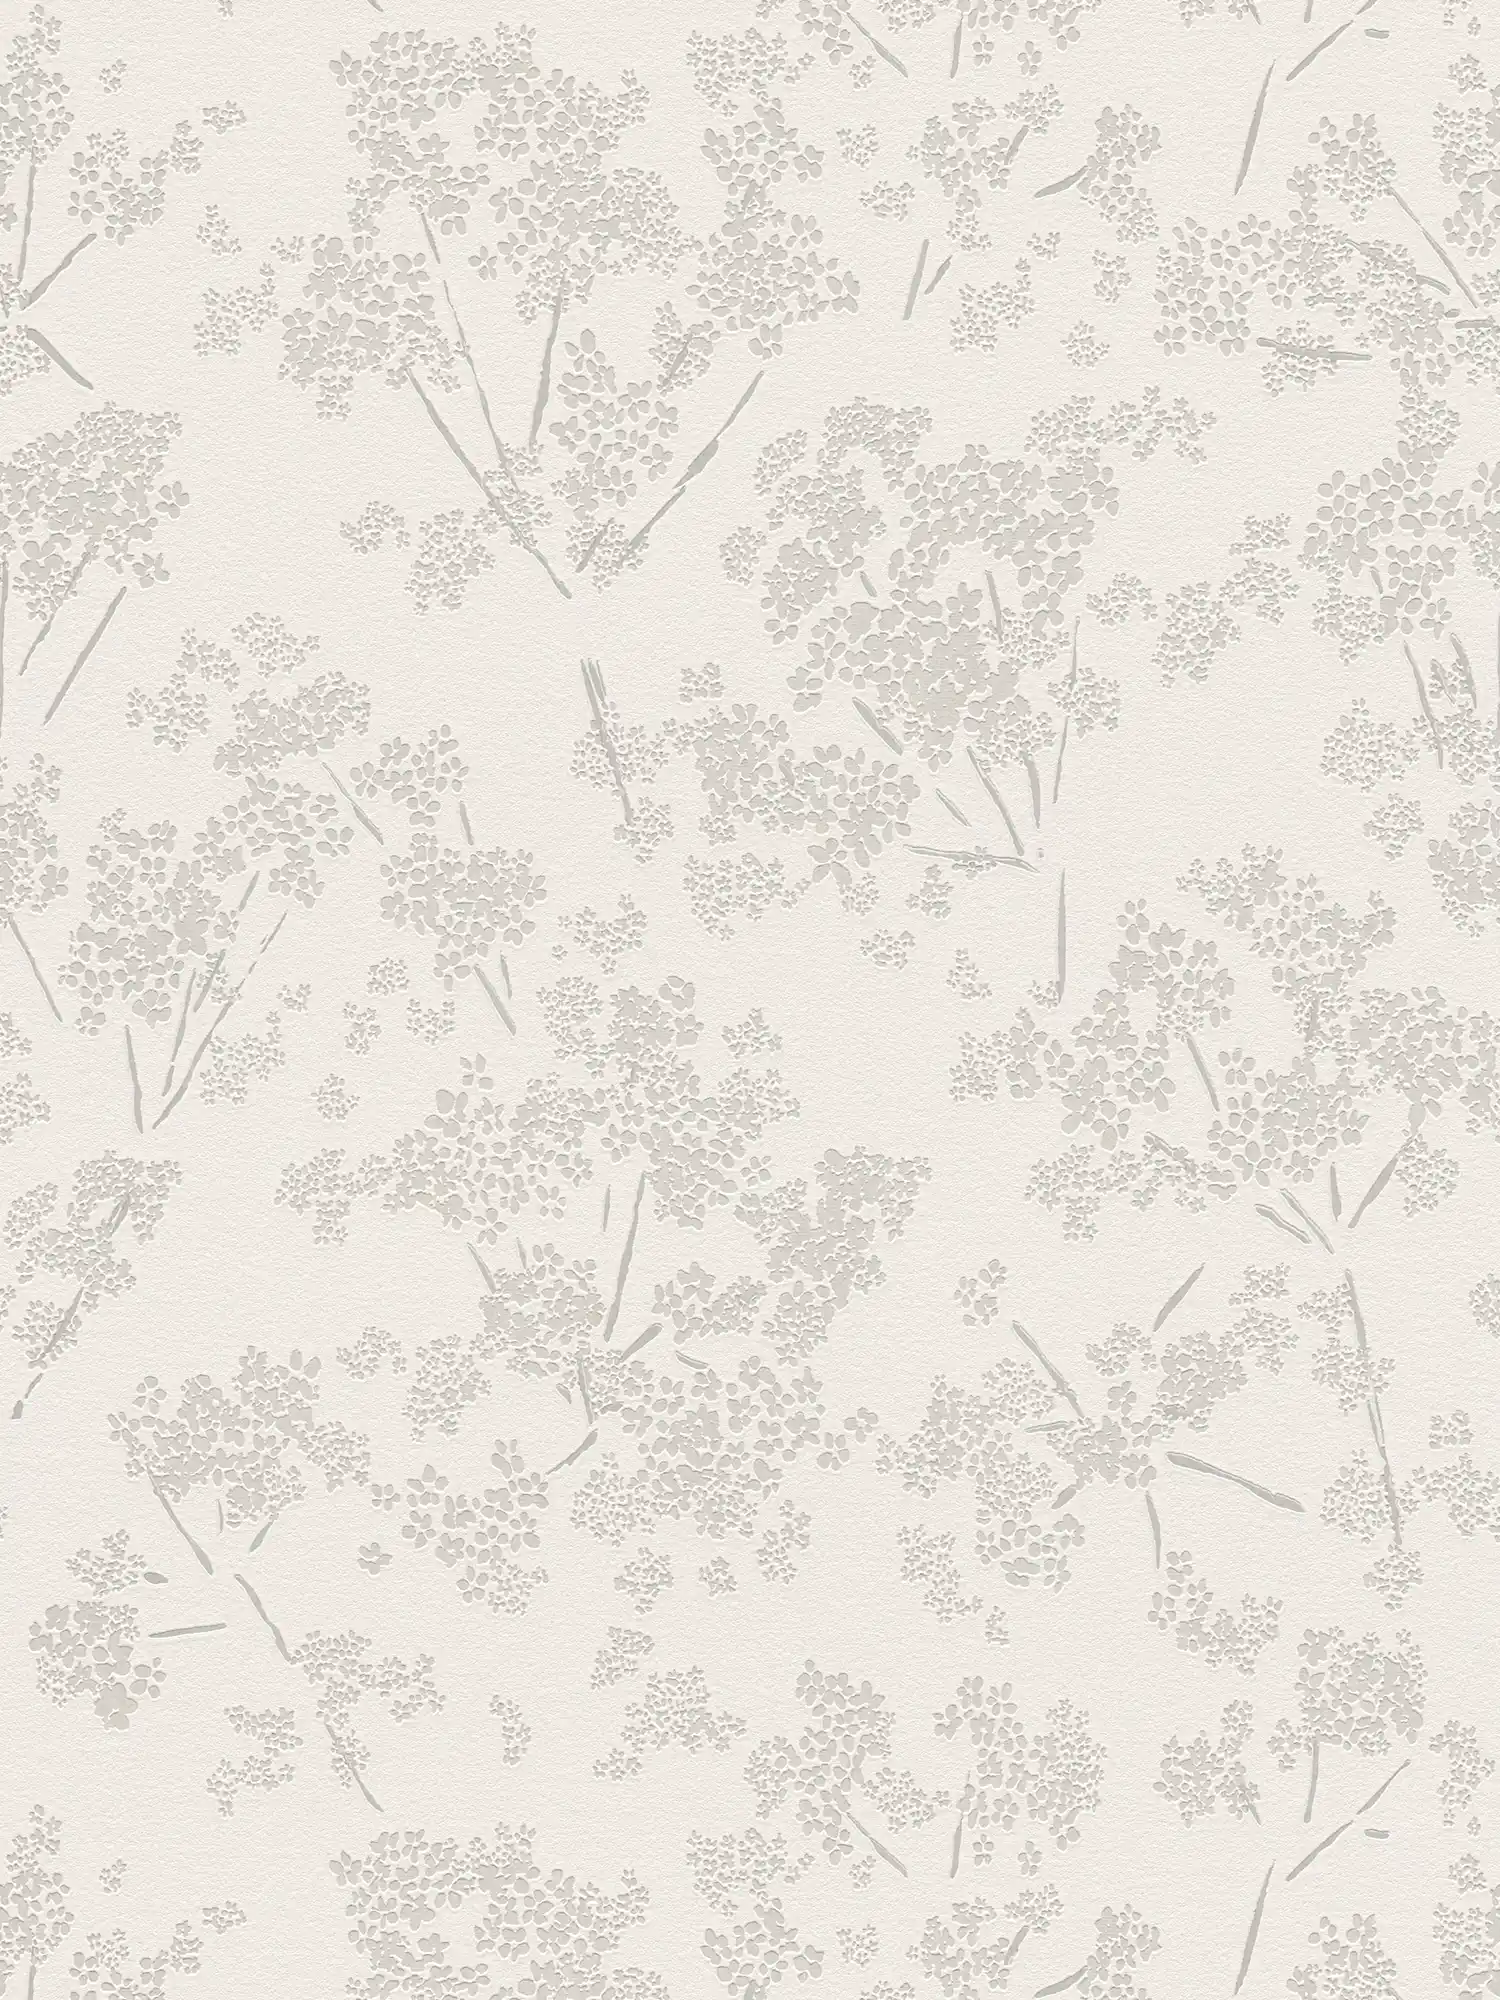 Vliesbehang met bloemenmotief - wit, grijs
